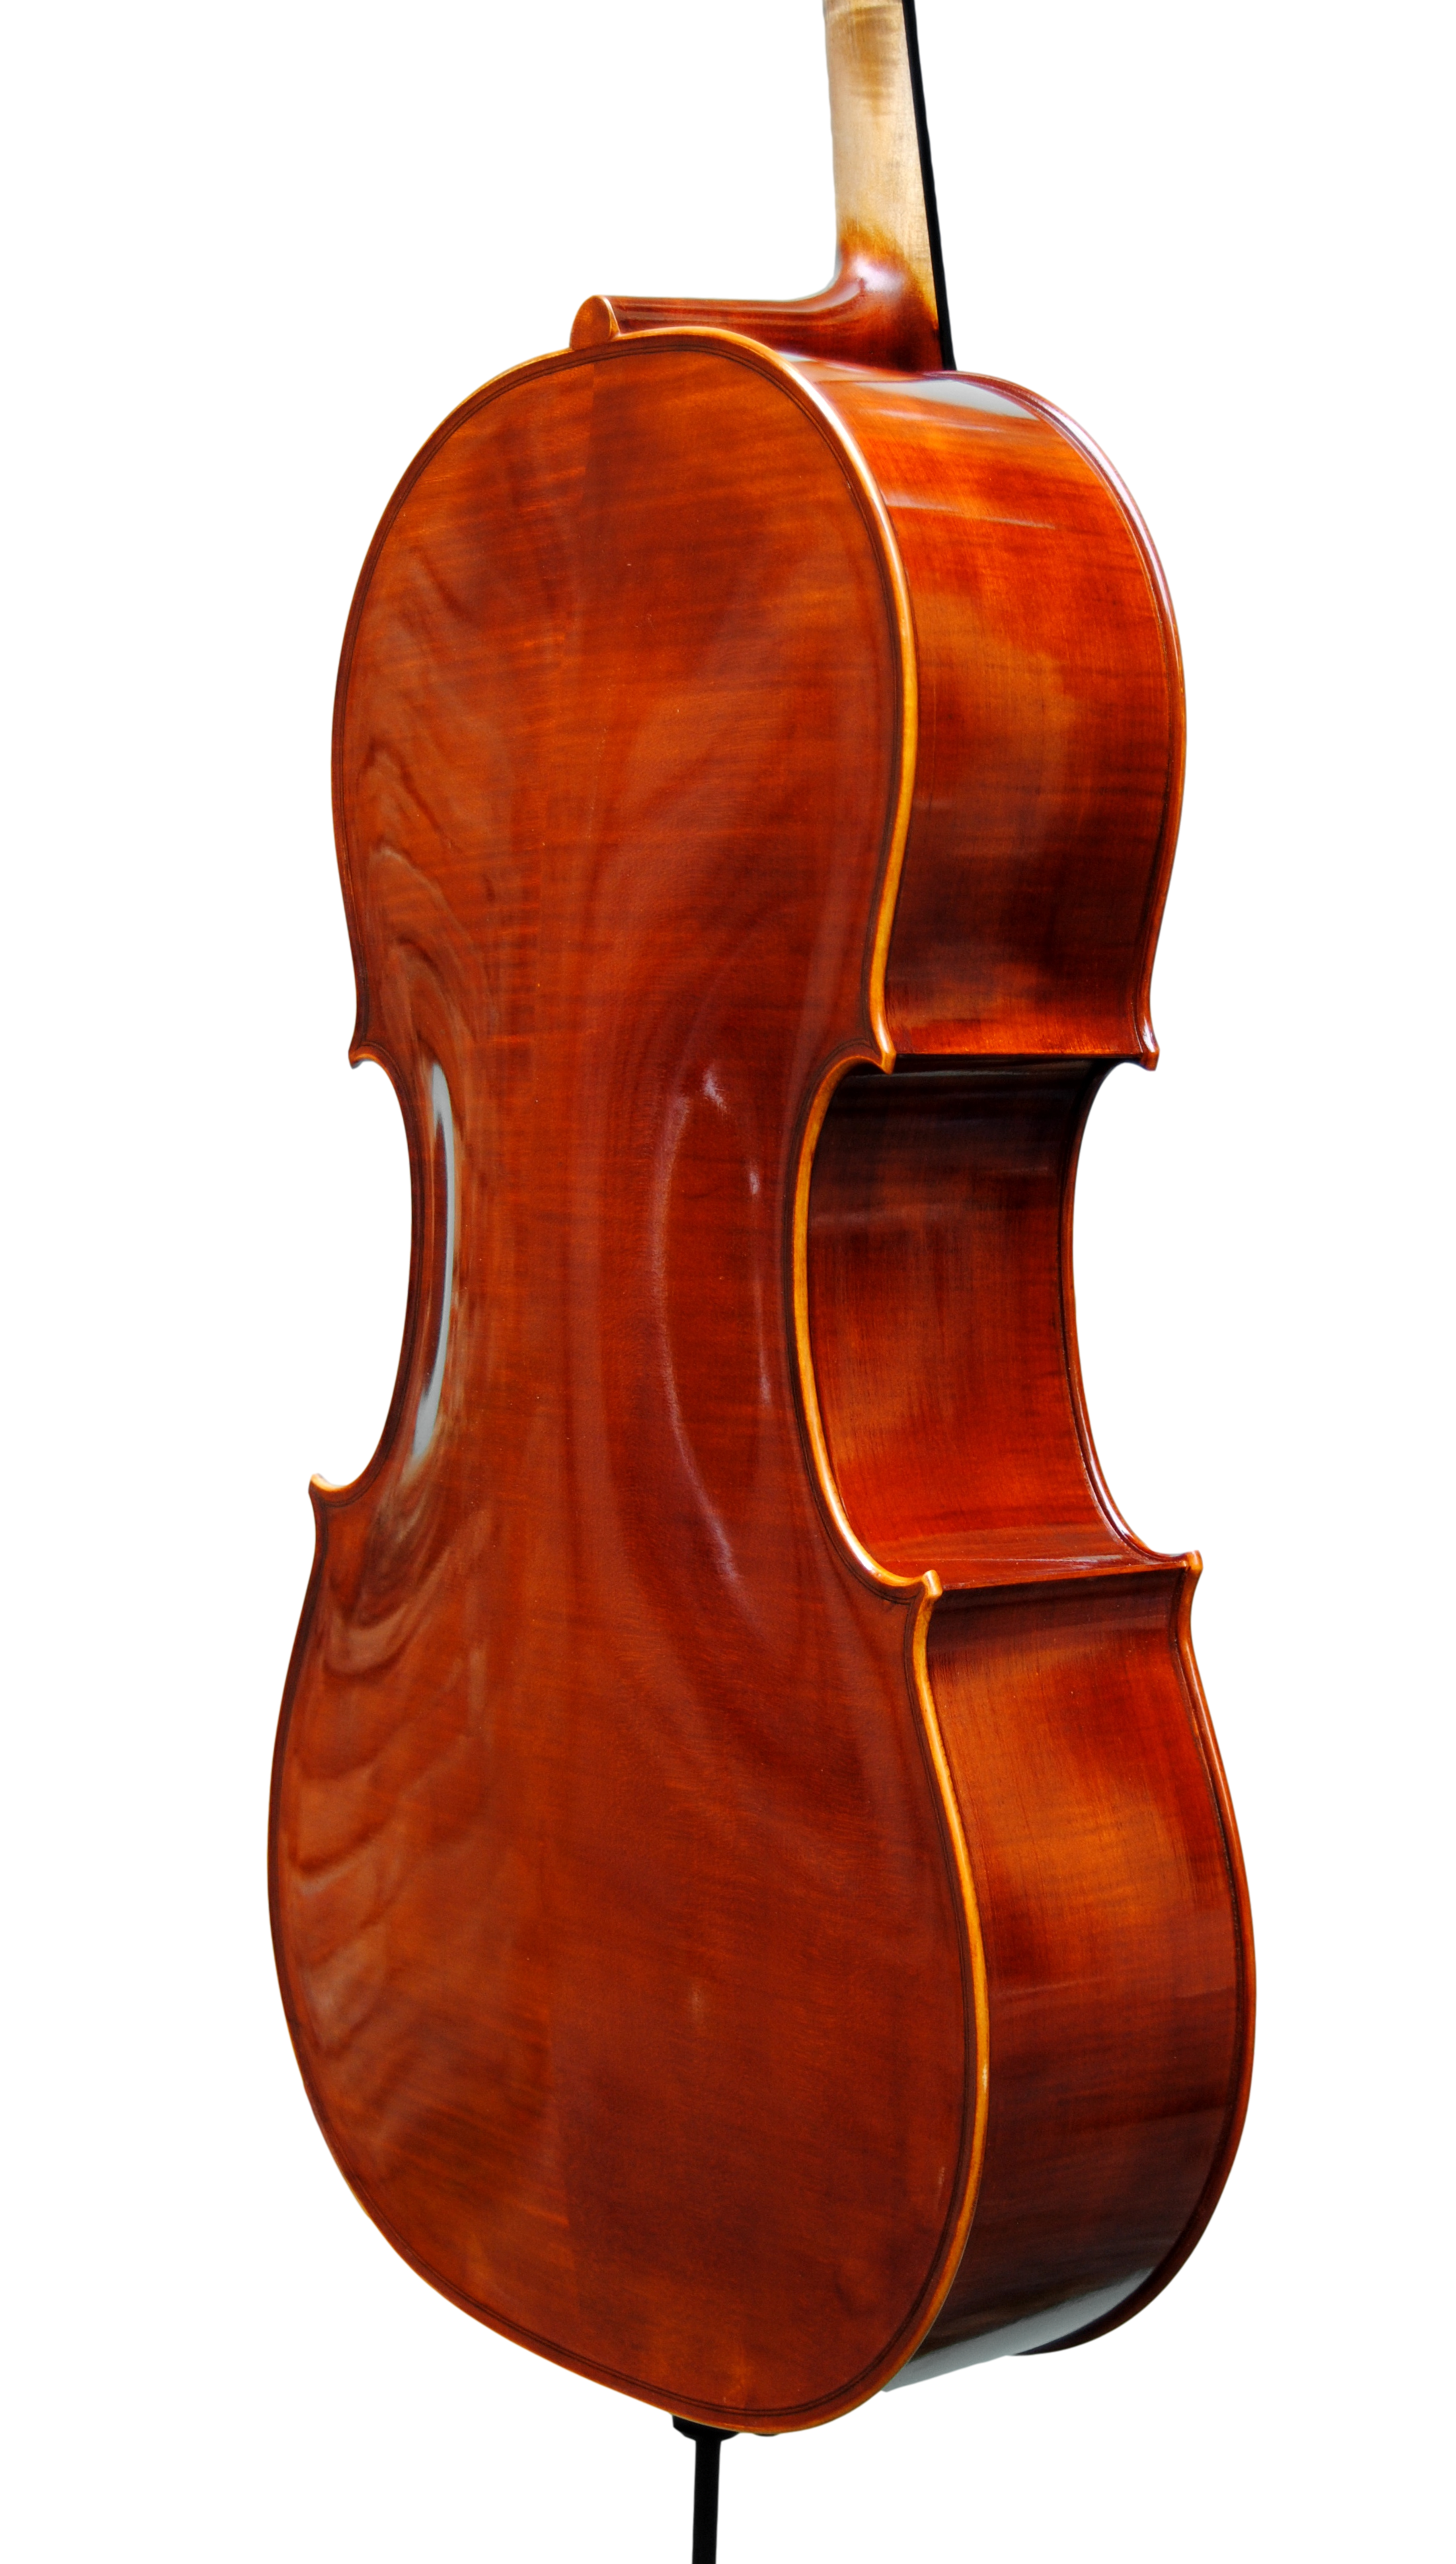 Cello - Scala Perfetta 7/8, Stradivari